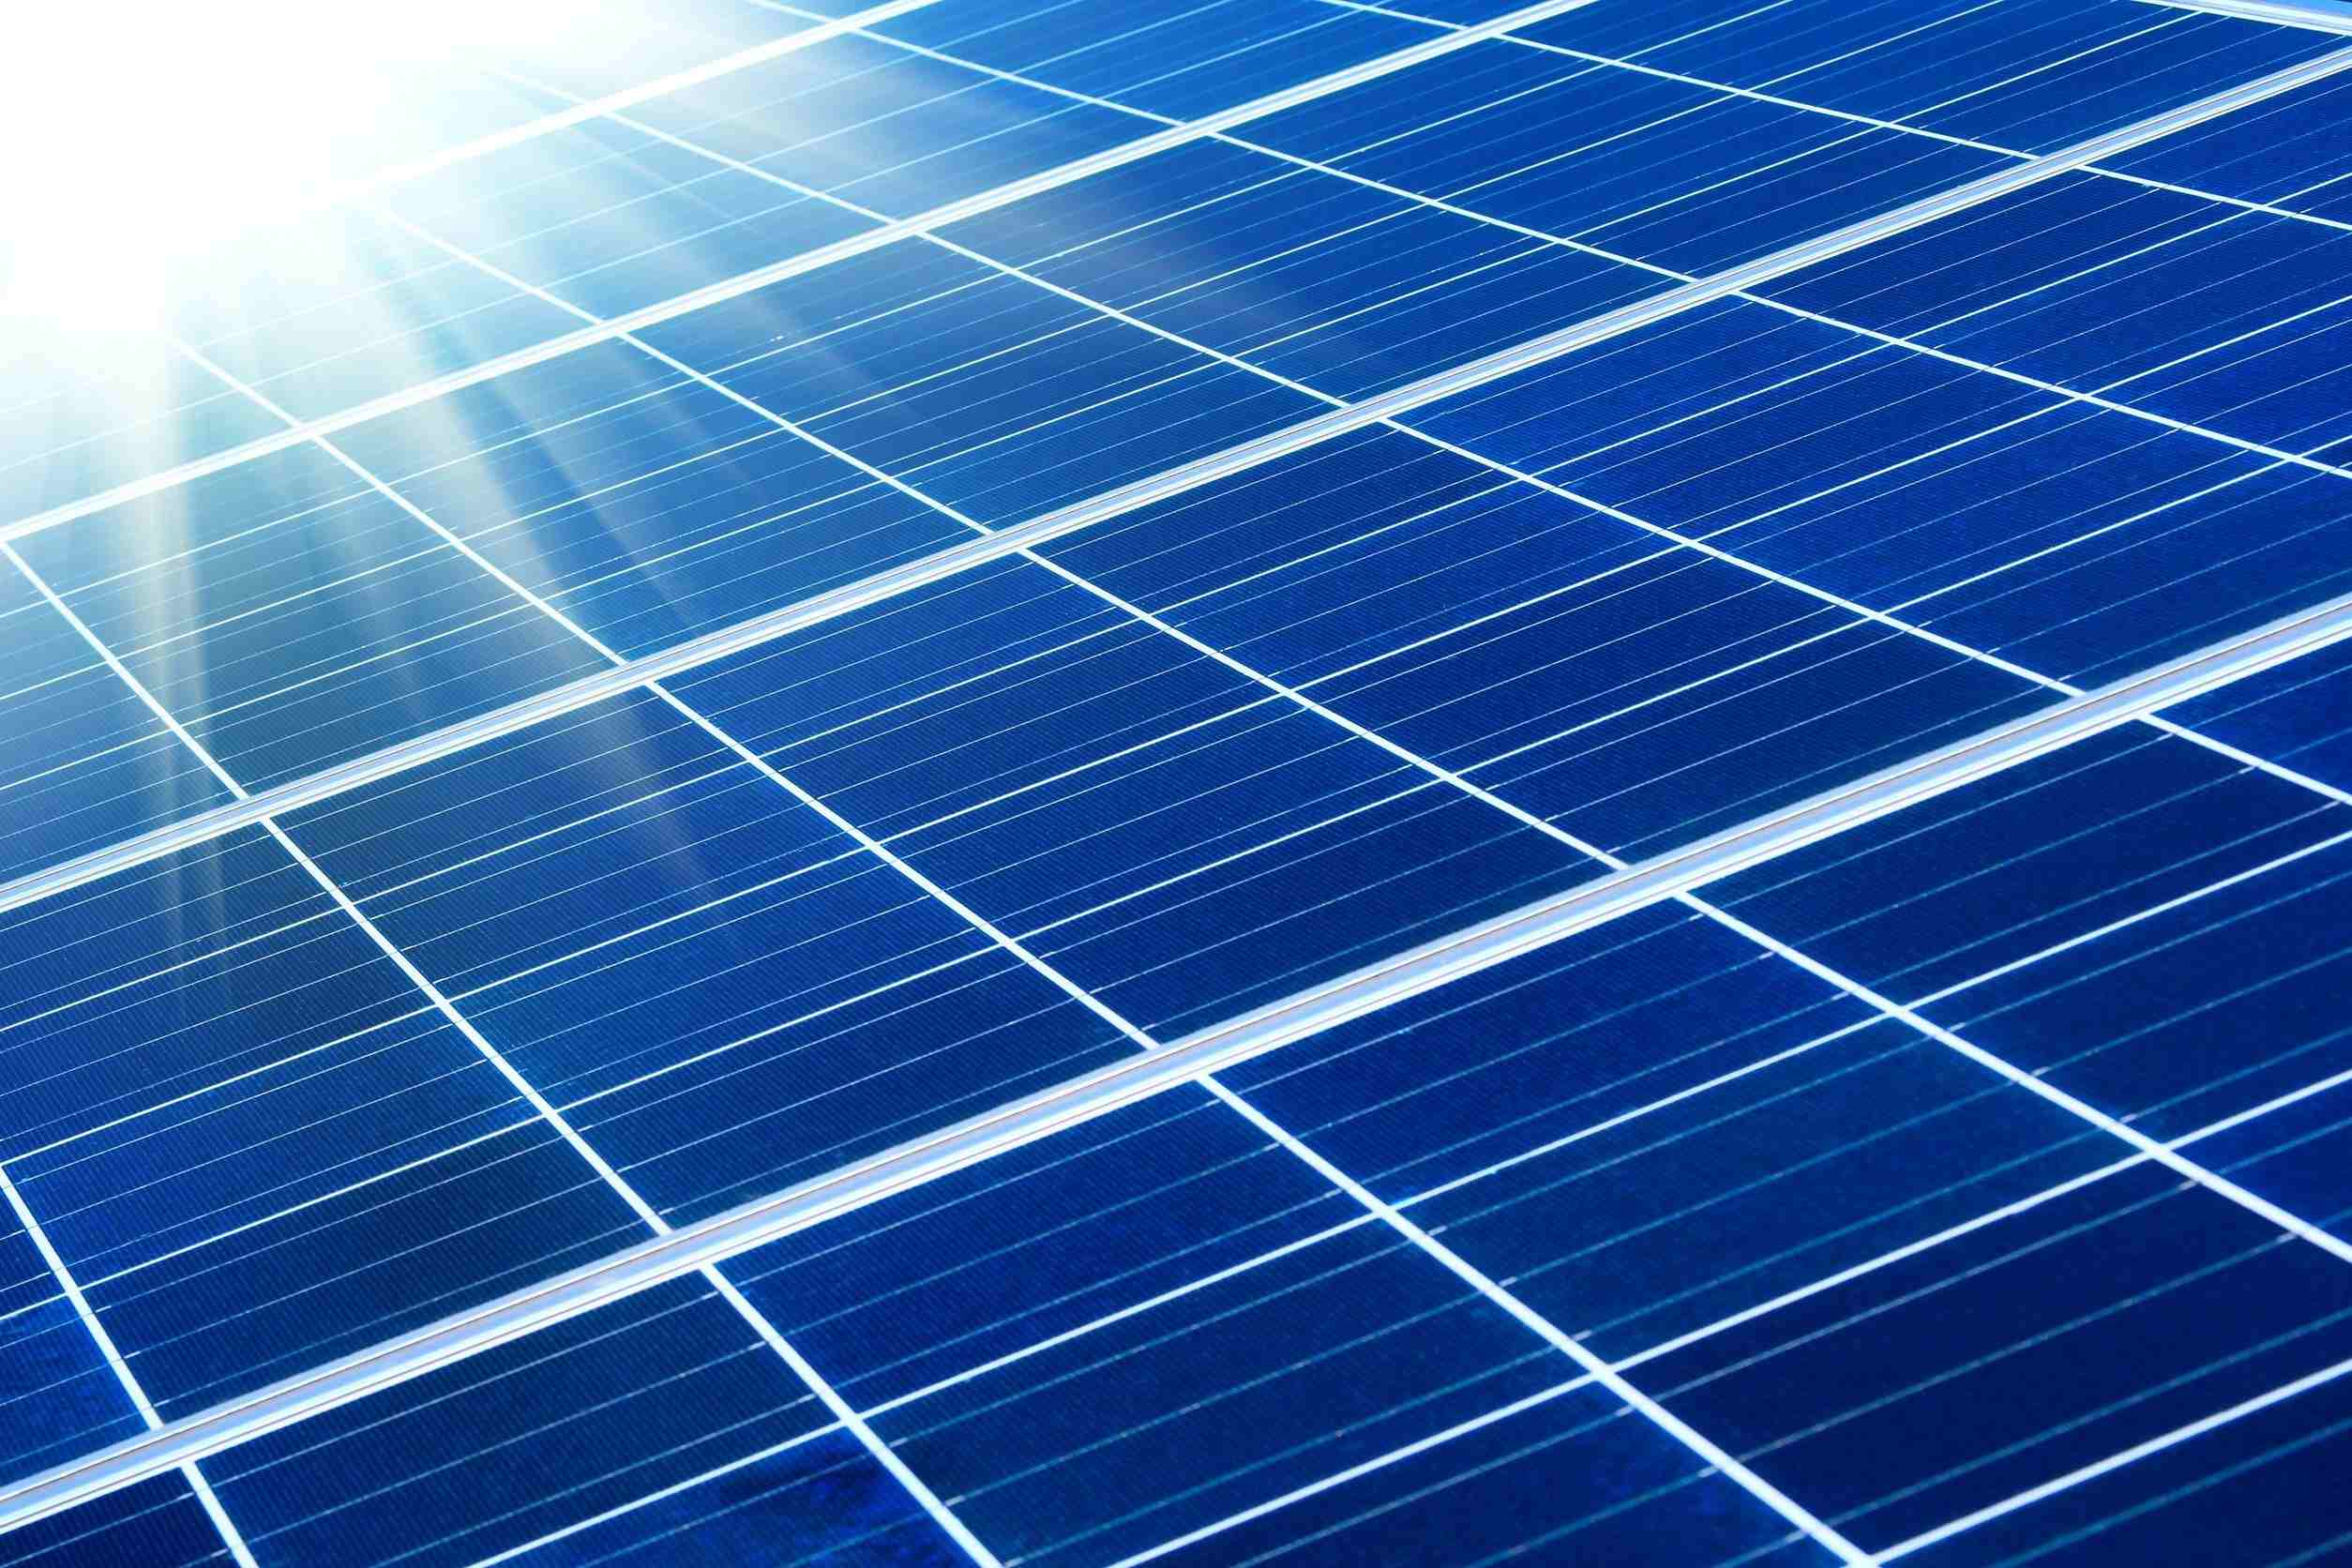 Fin 2015, la production d’énergie photovoltaïque atteingnait les 27 Mégawatts-crête en Polynésie française.